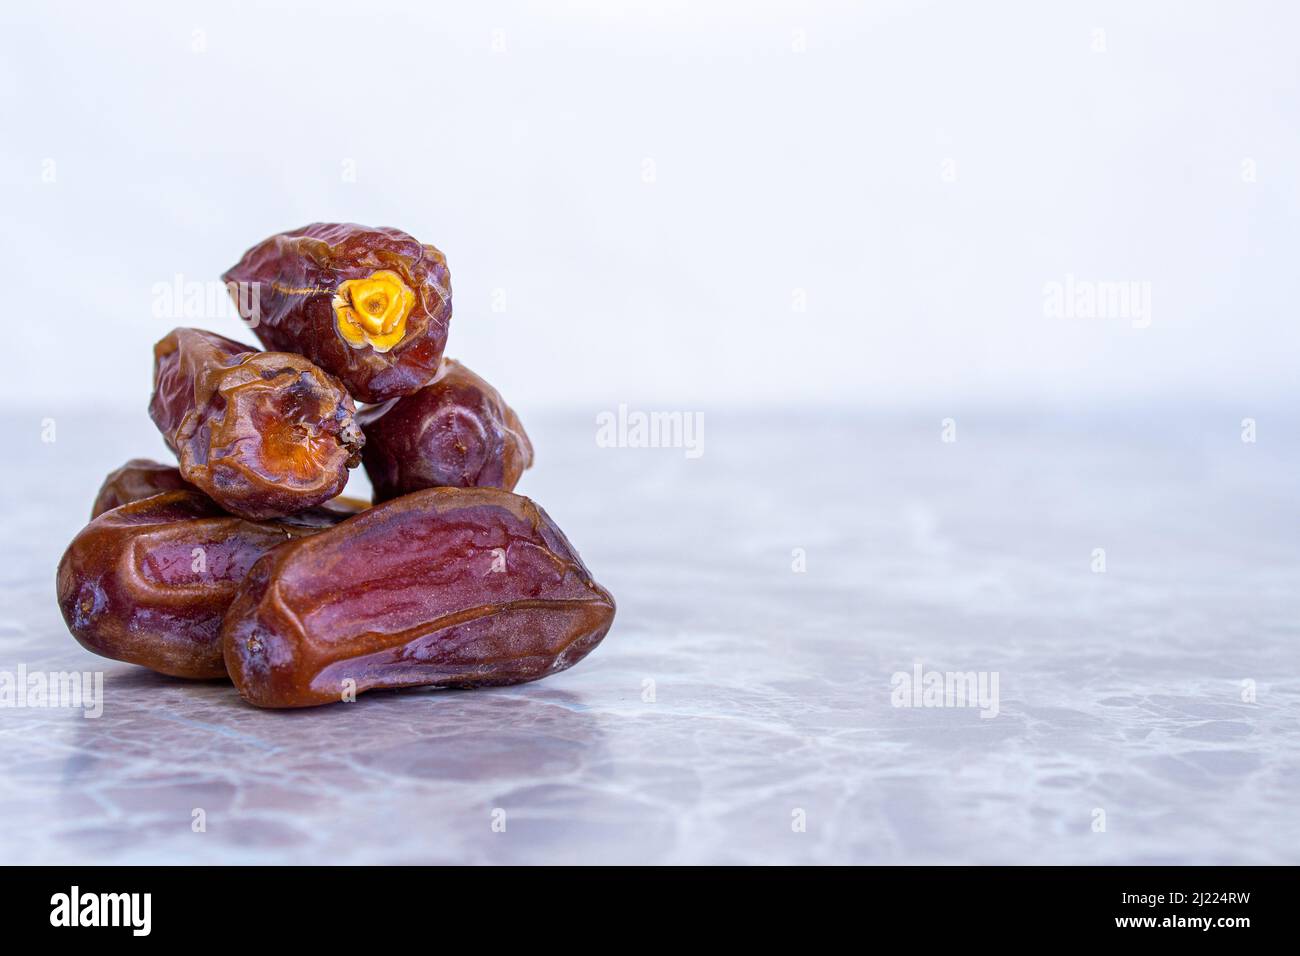 Fruits dattes séchés sur une table en marbre. Gros plan de dates mûres avec espace pour le texte. Nourriture traditionnelle iftar pour les musulmans. Banque D'Images